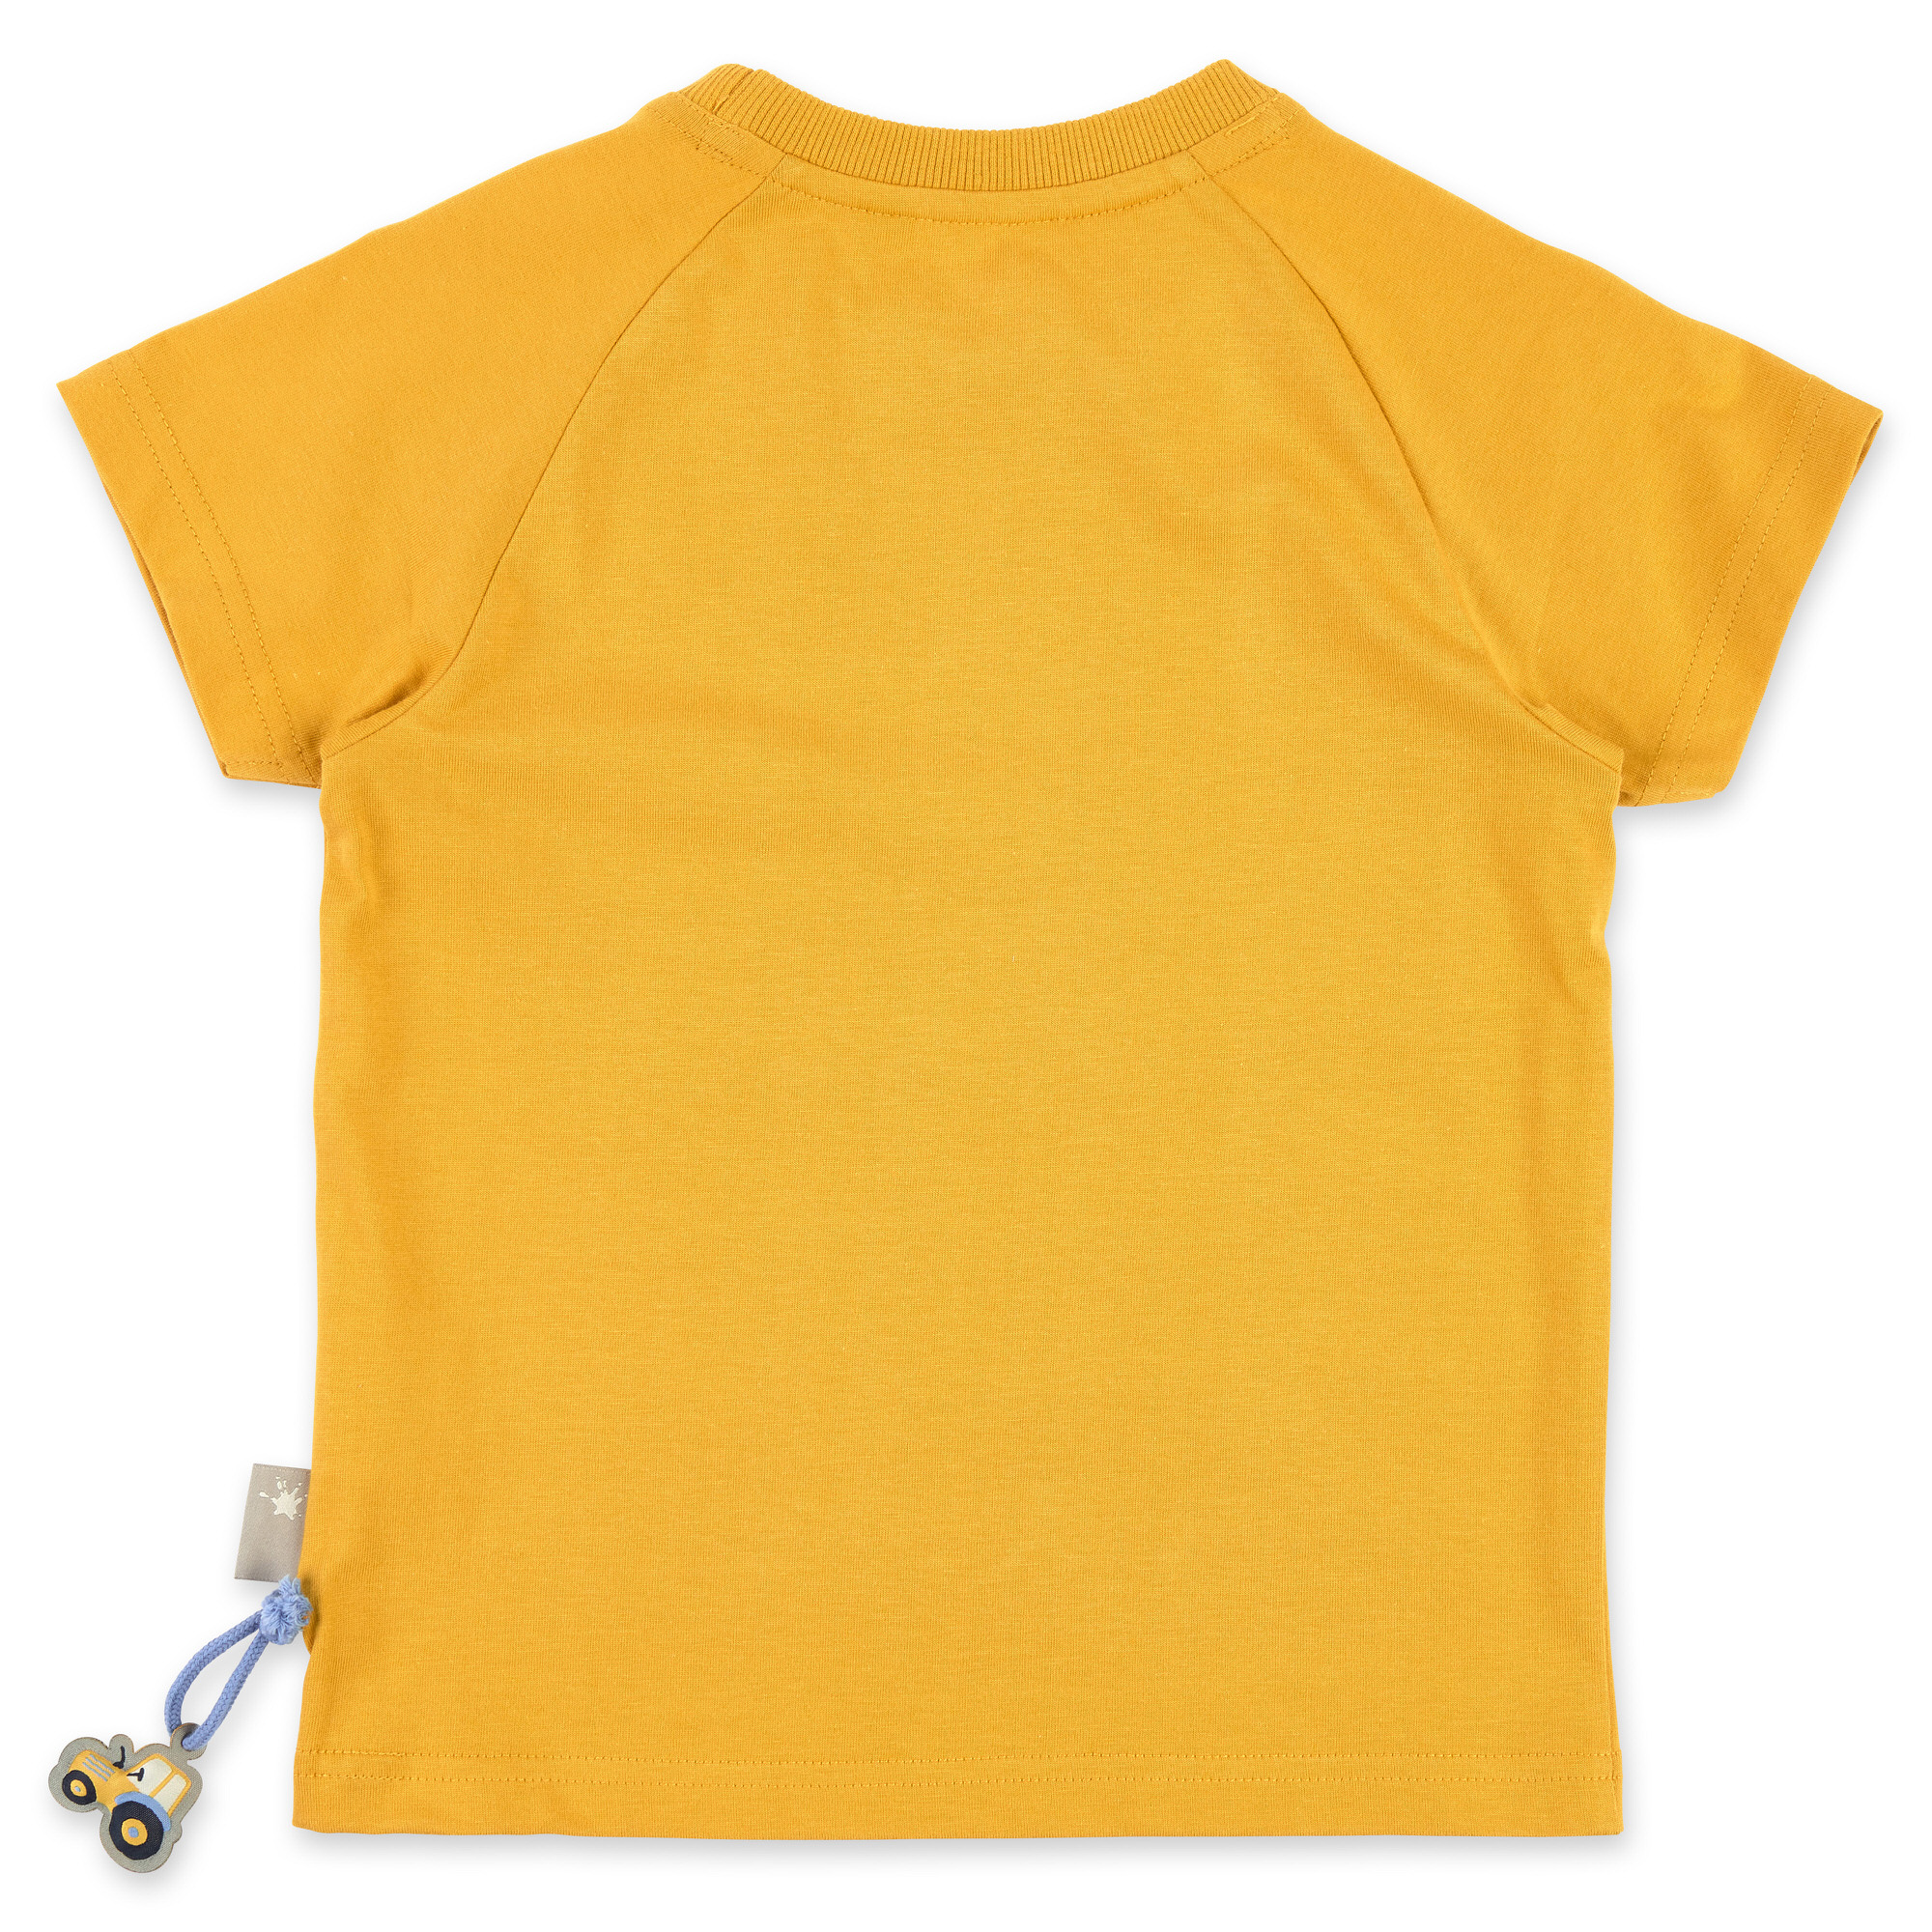 Children's T-shirt Team Zone, honey yellow